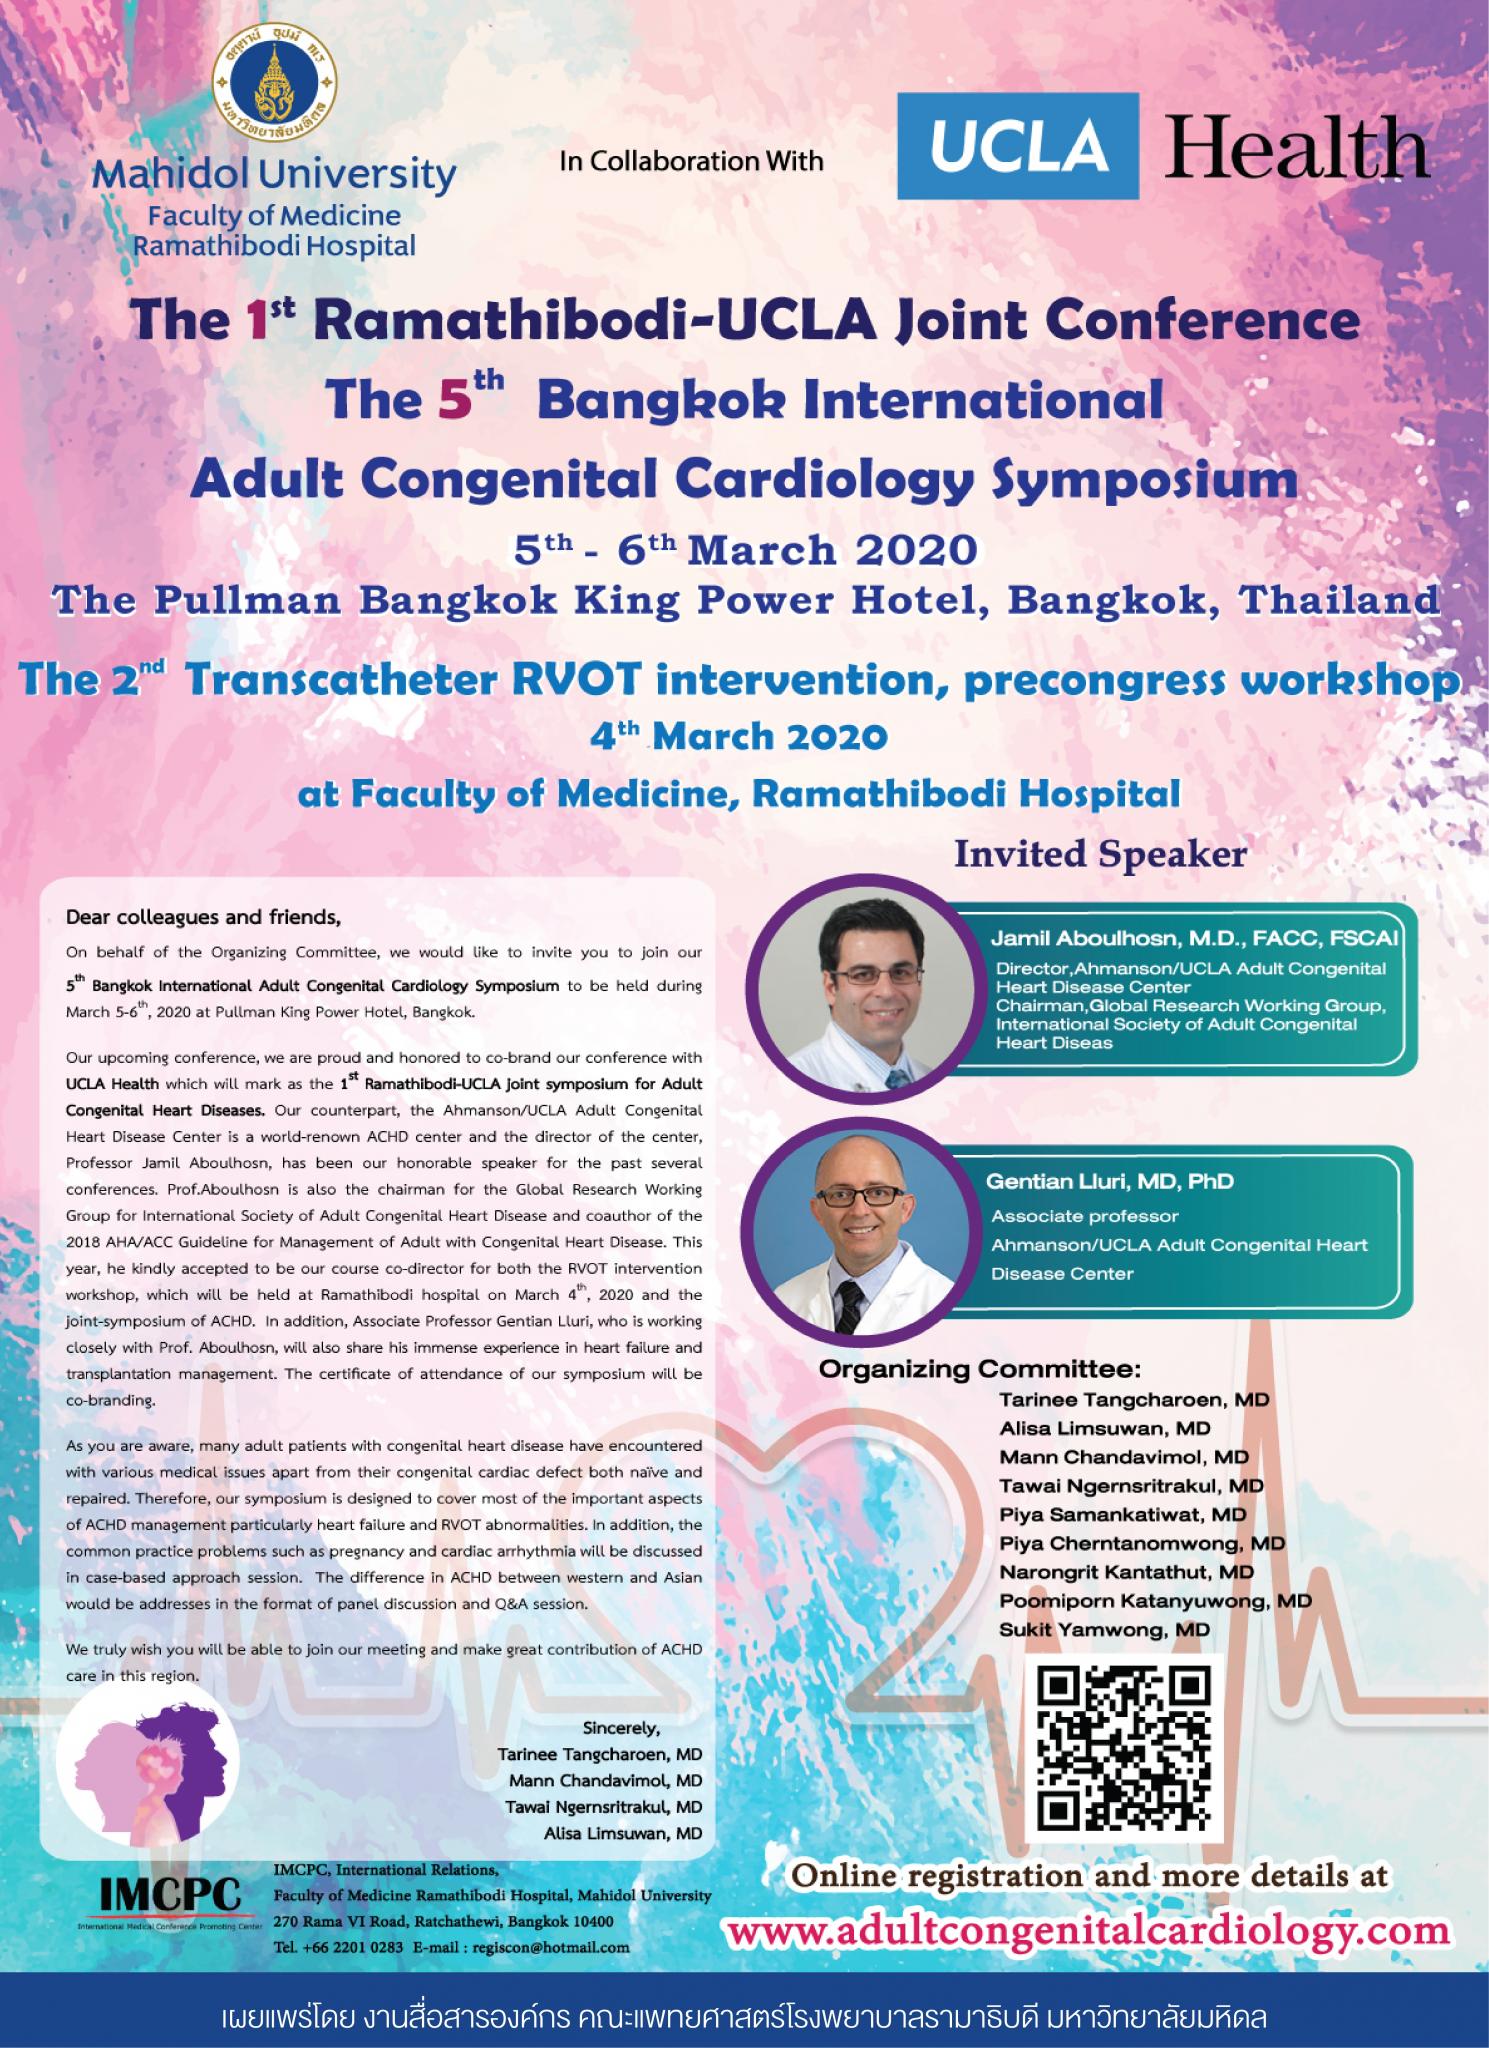 The 1st Ramathibodi-UCLA Joint Conference The 5th Bangkok International Adult Congenital Cardiology Symposium